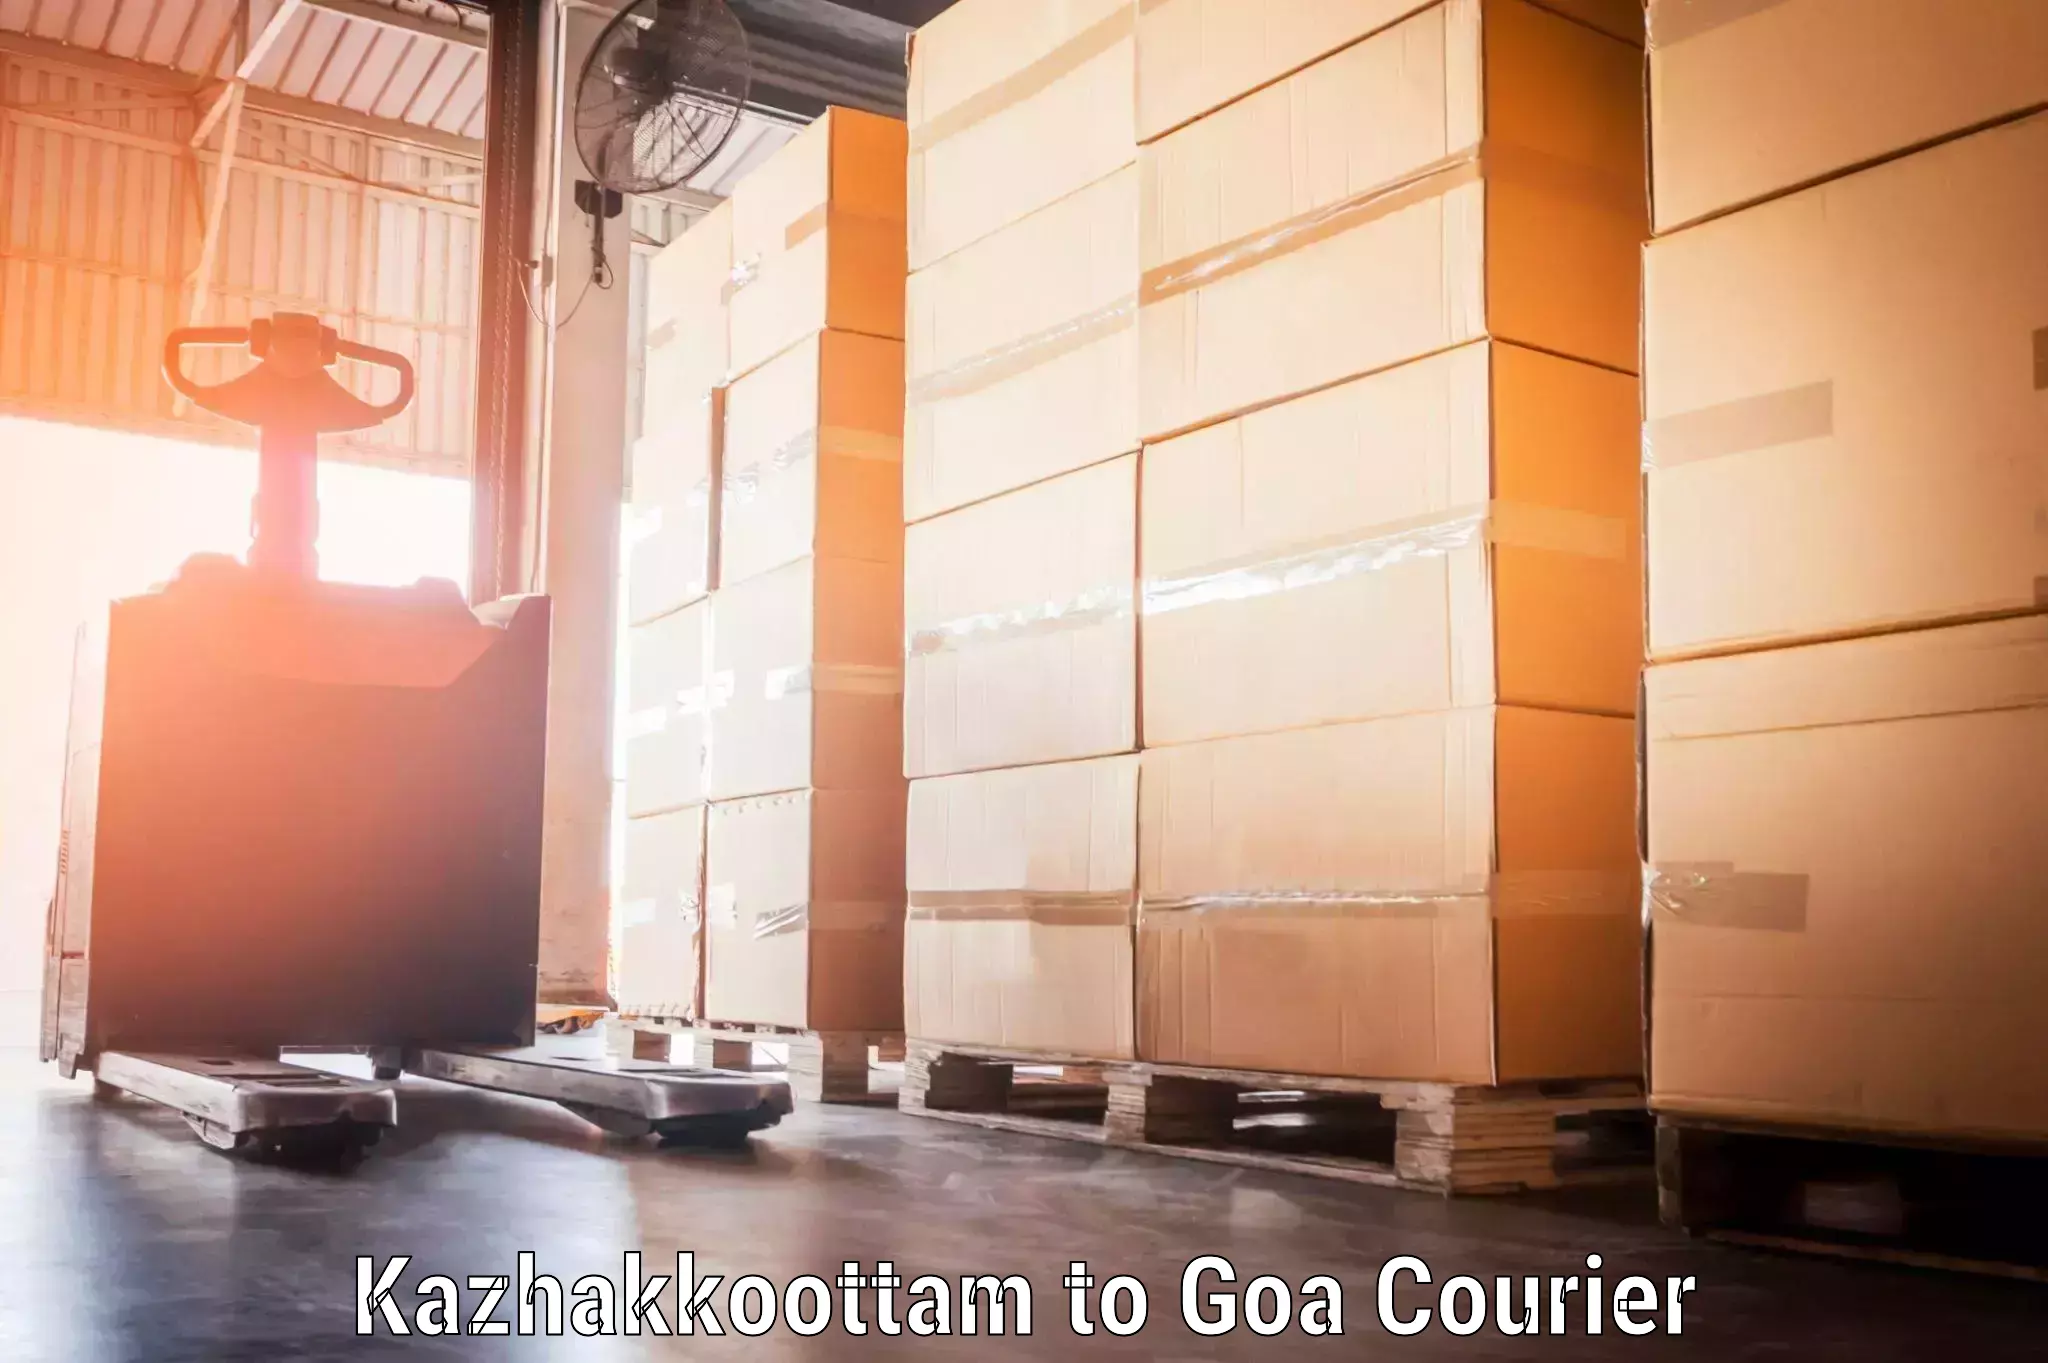 Luggage delivery app Kazhakkoottam to NIT Goa